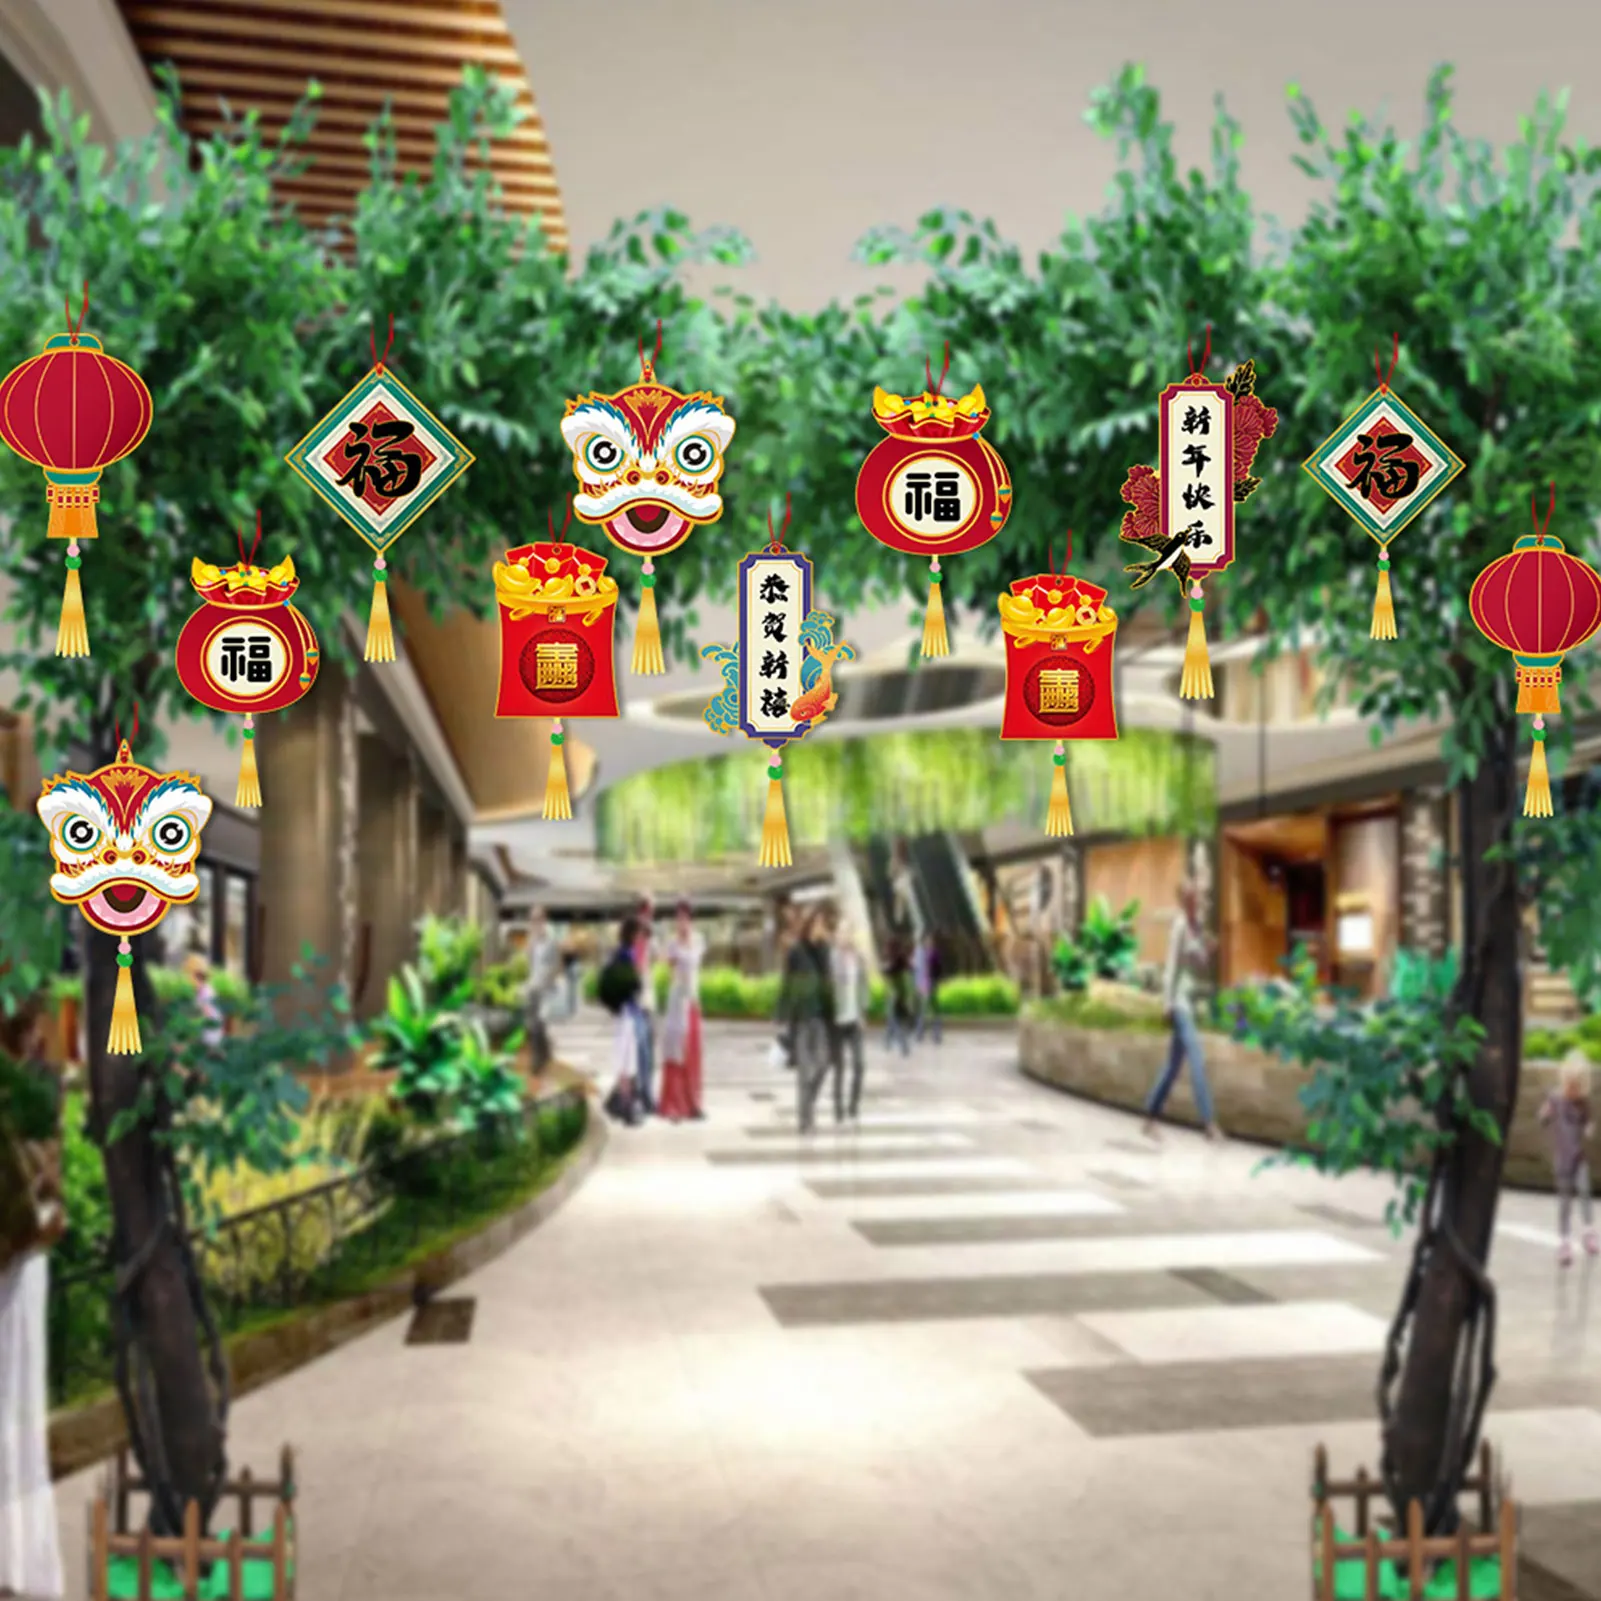 

Китайские Новогодние украшения, украшение на Лунный Новый год, подвеска в виде 12-летнего тигра, китайский узел на праздник весны 2022